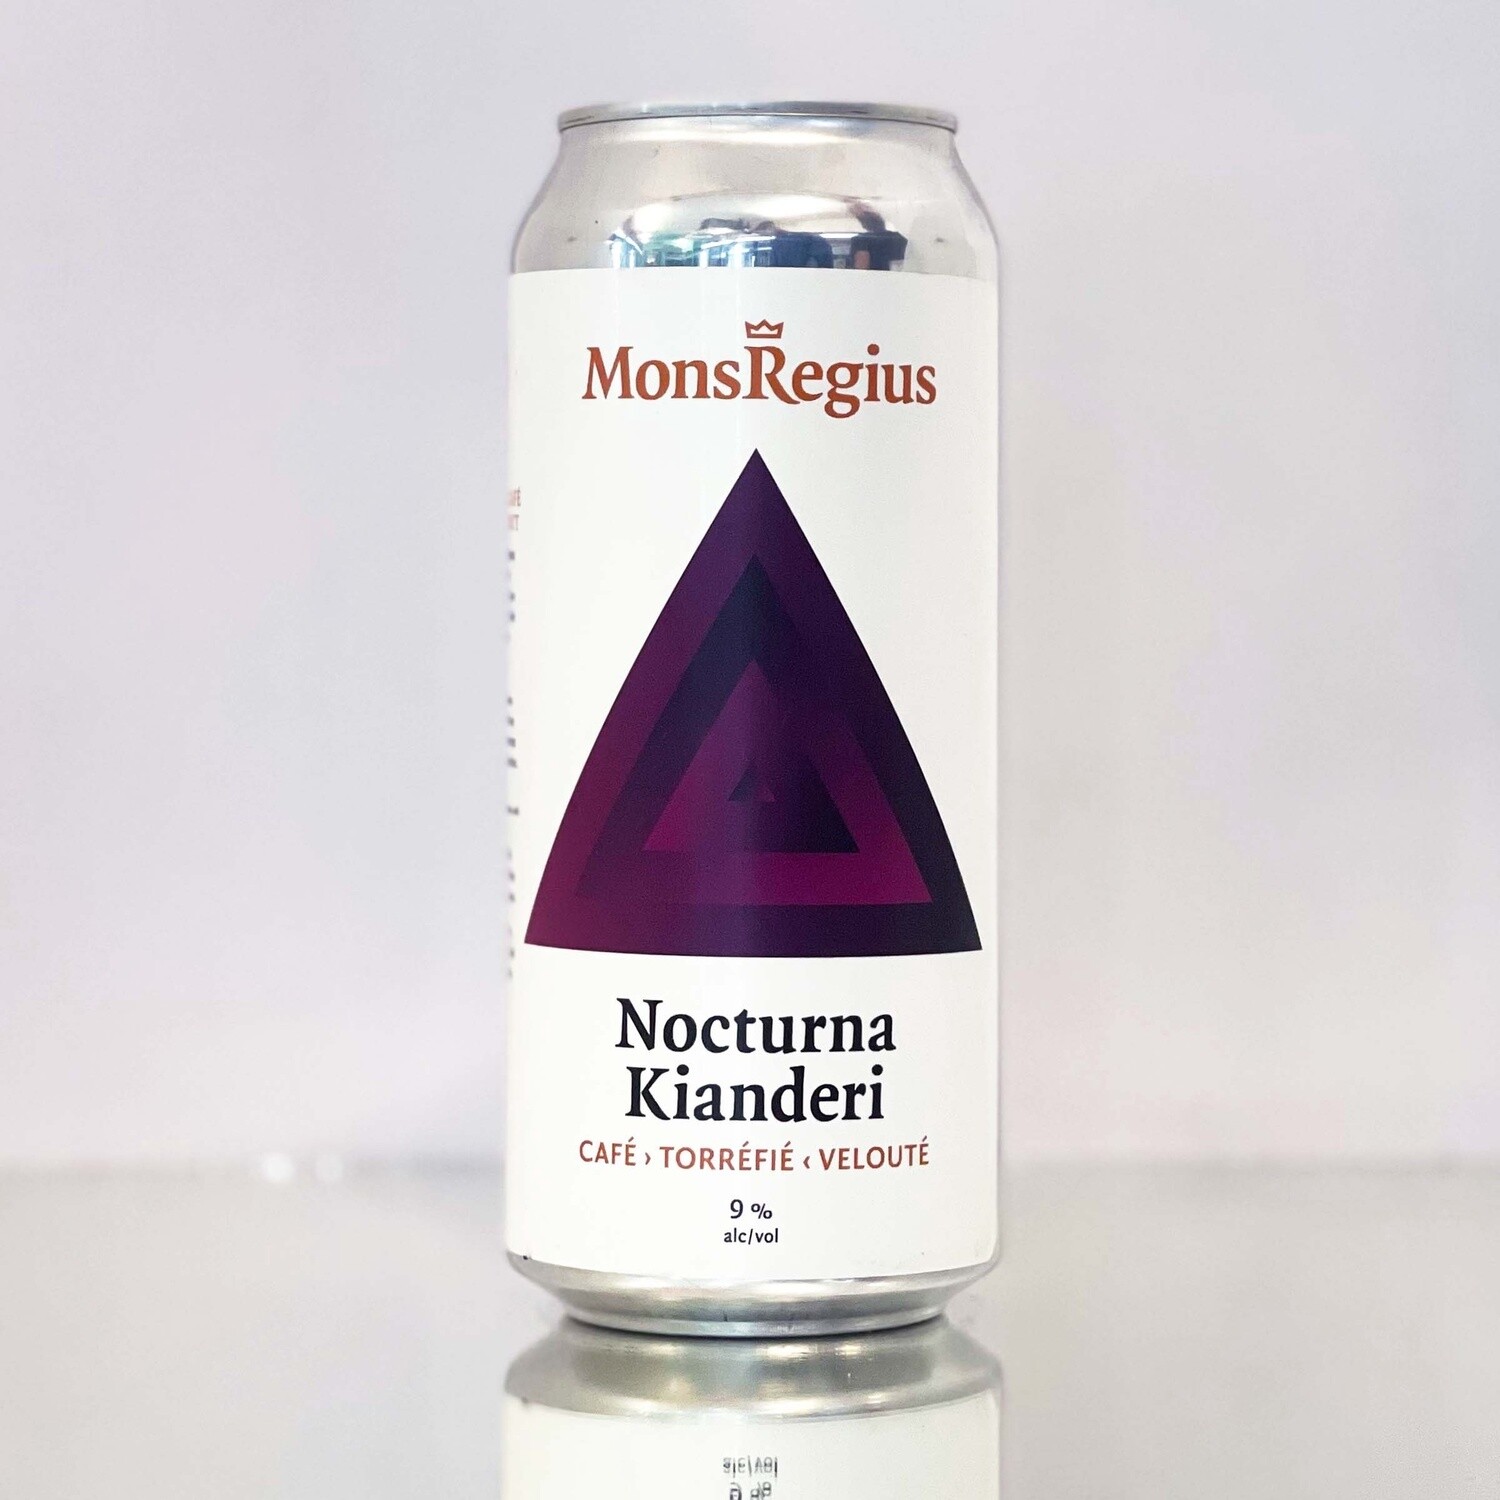 Monsregius - Nocturna Kianderi